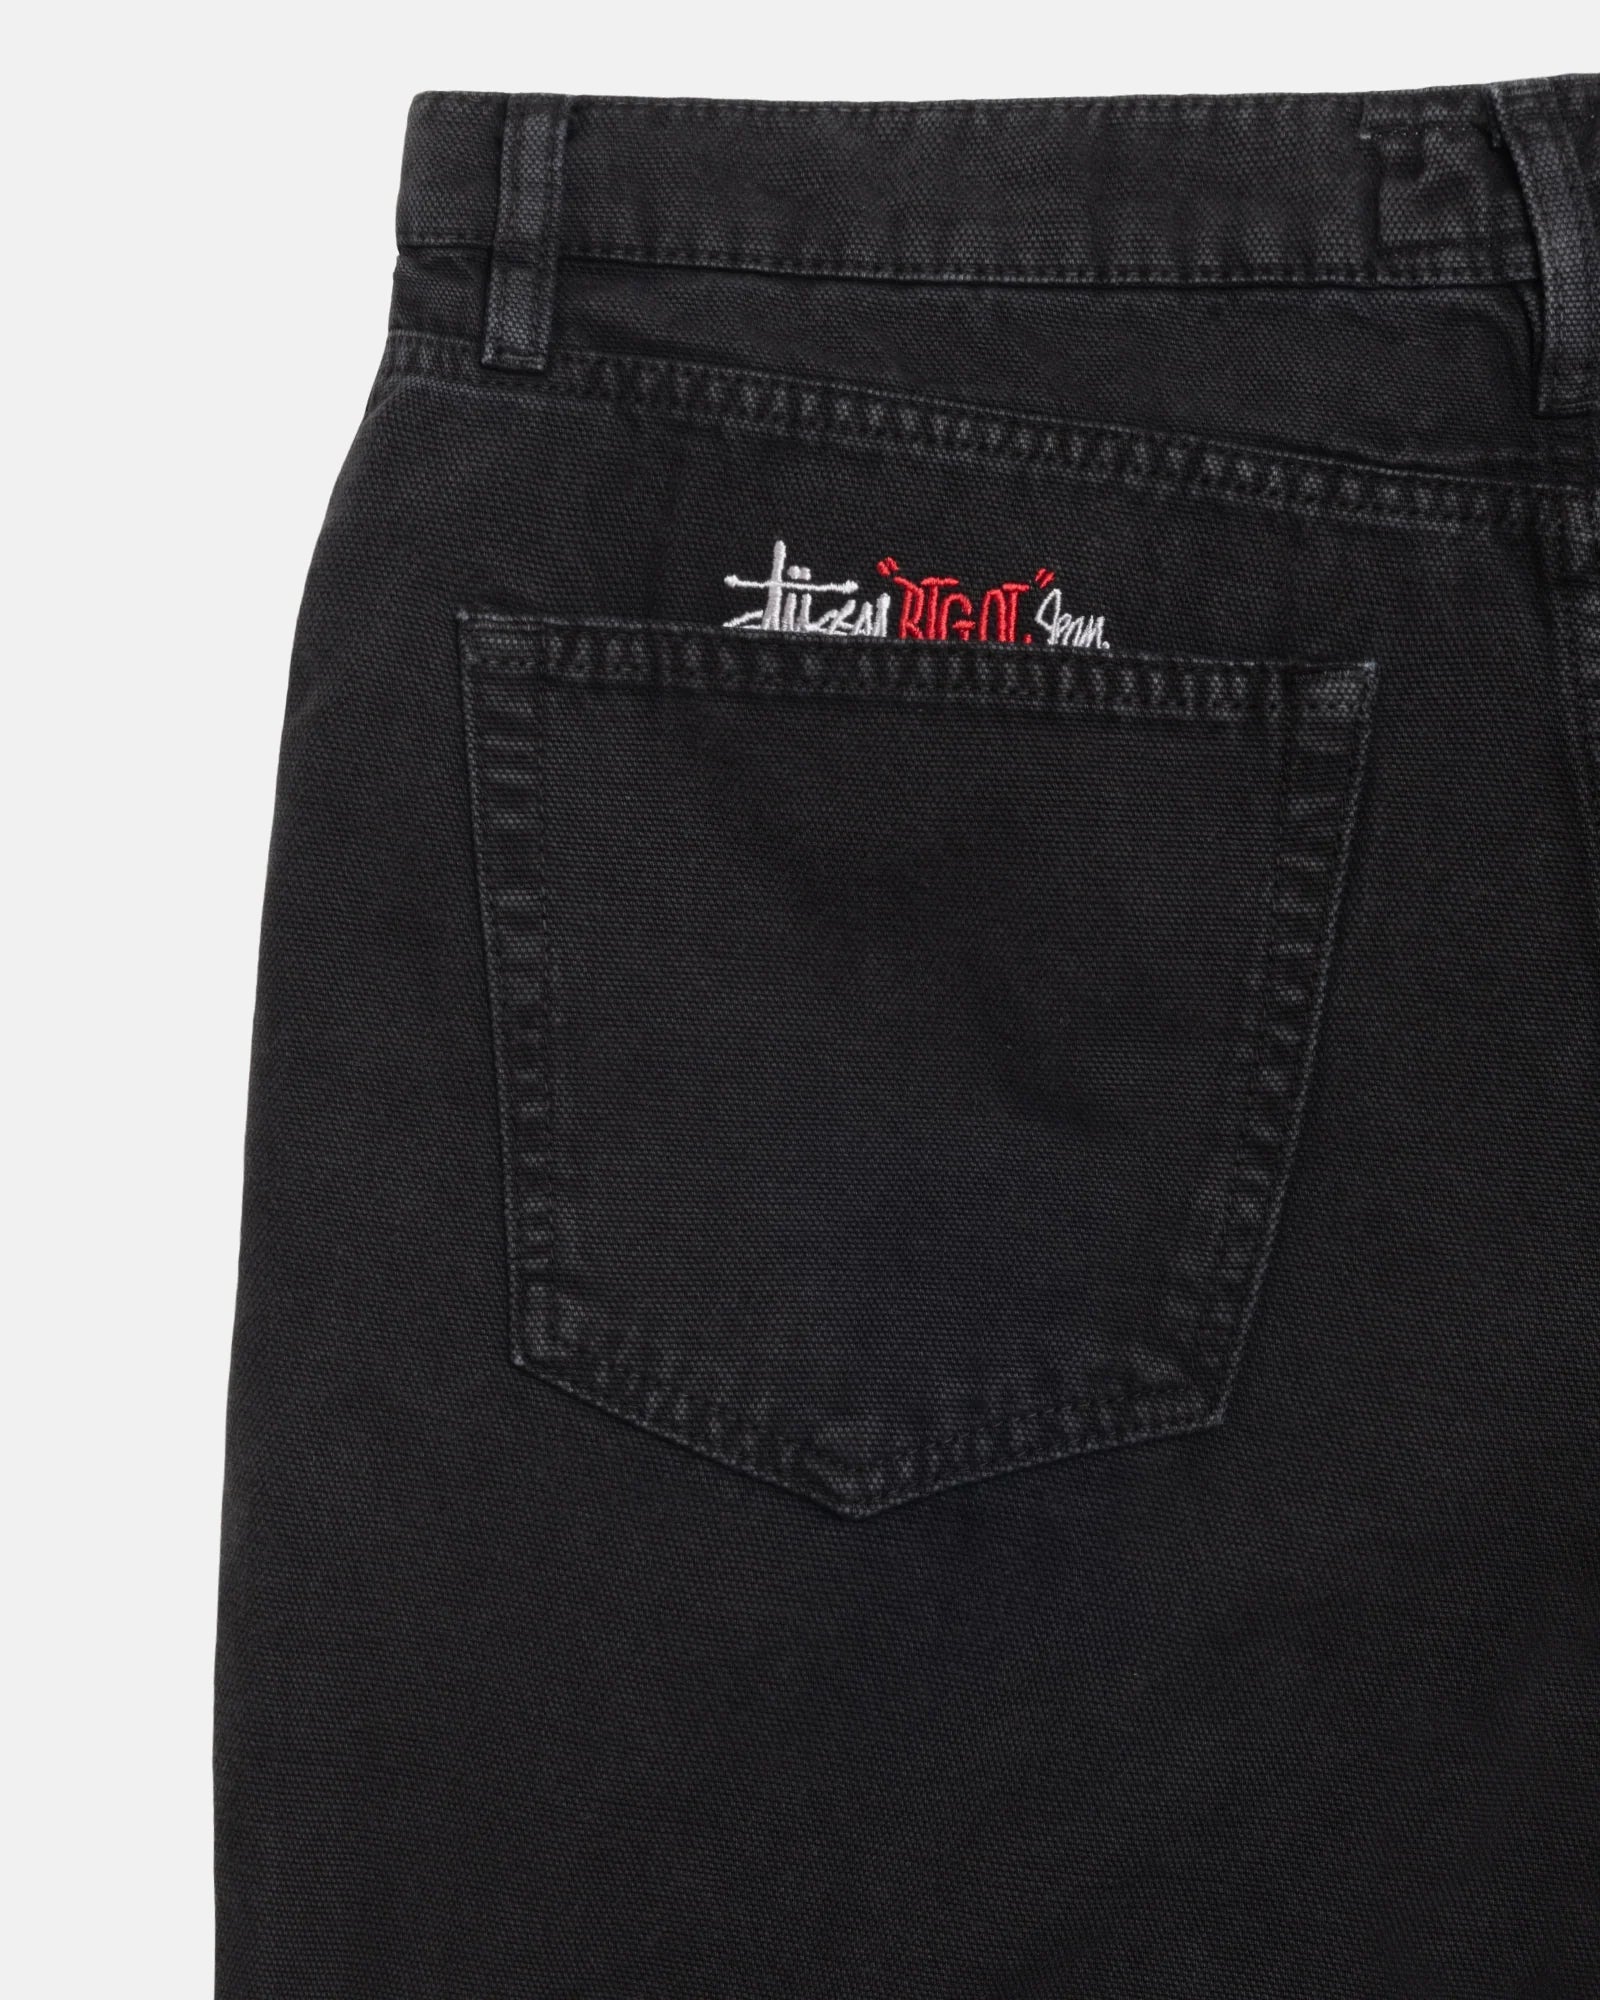 Stussy Big Ol Jeans Washed Canvas Black – Rose Street Skateshop